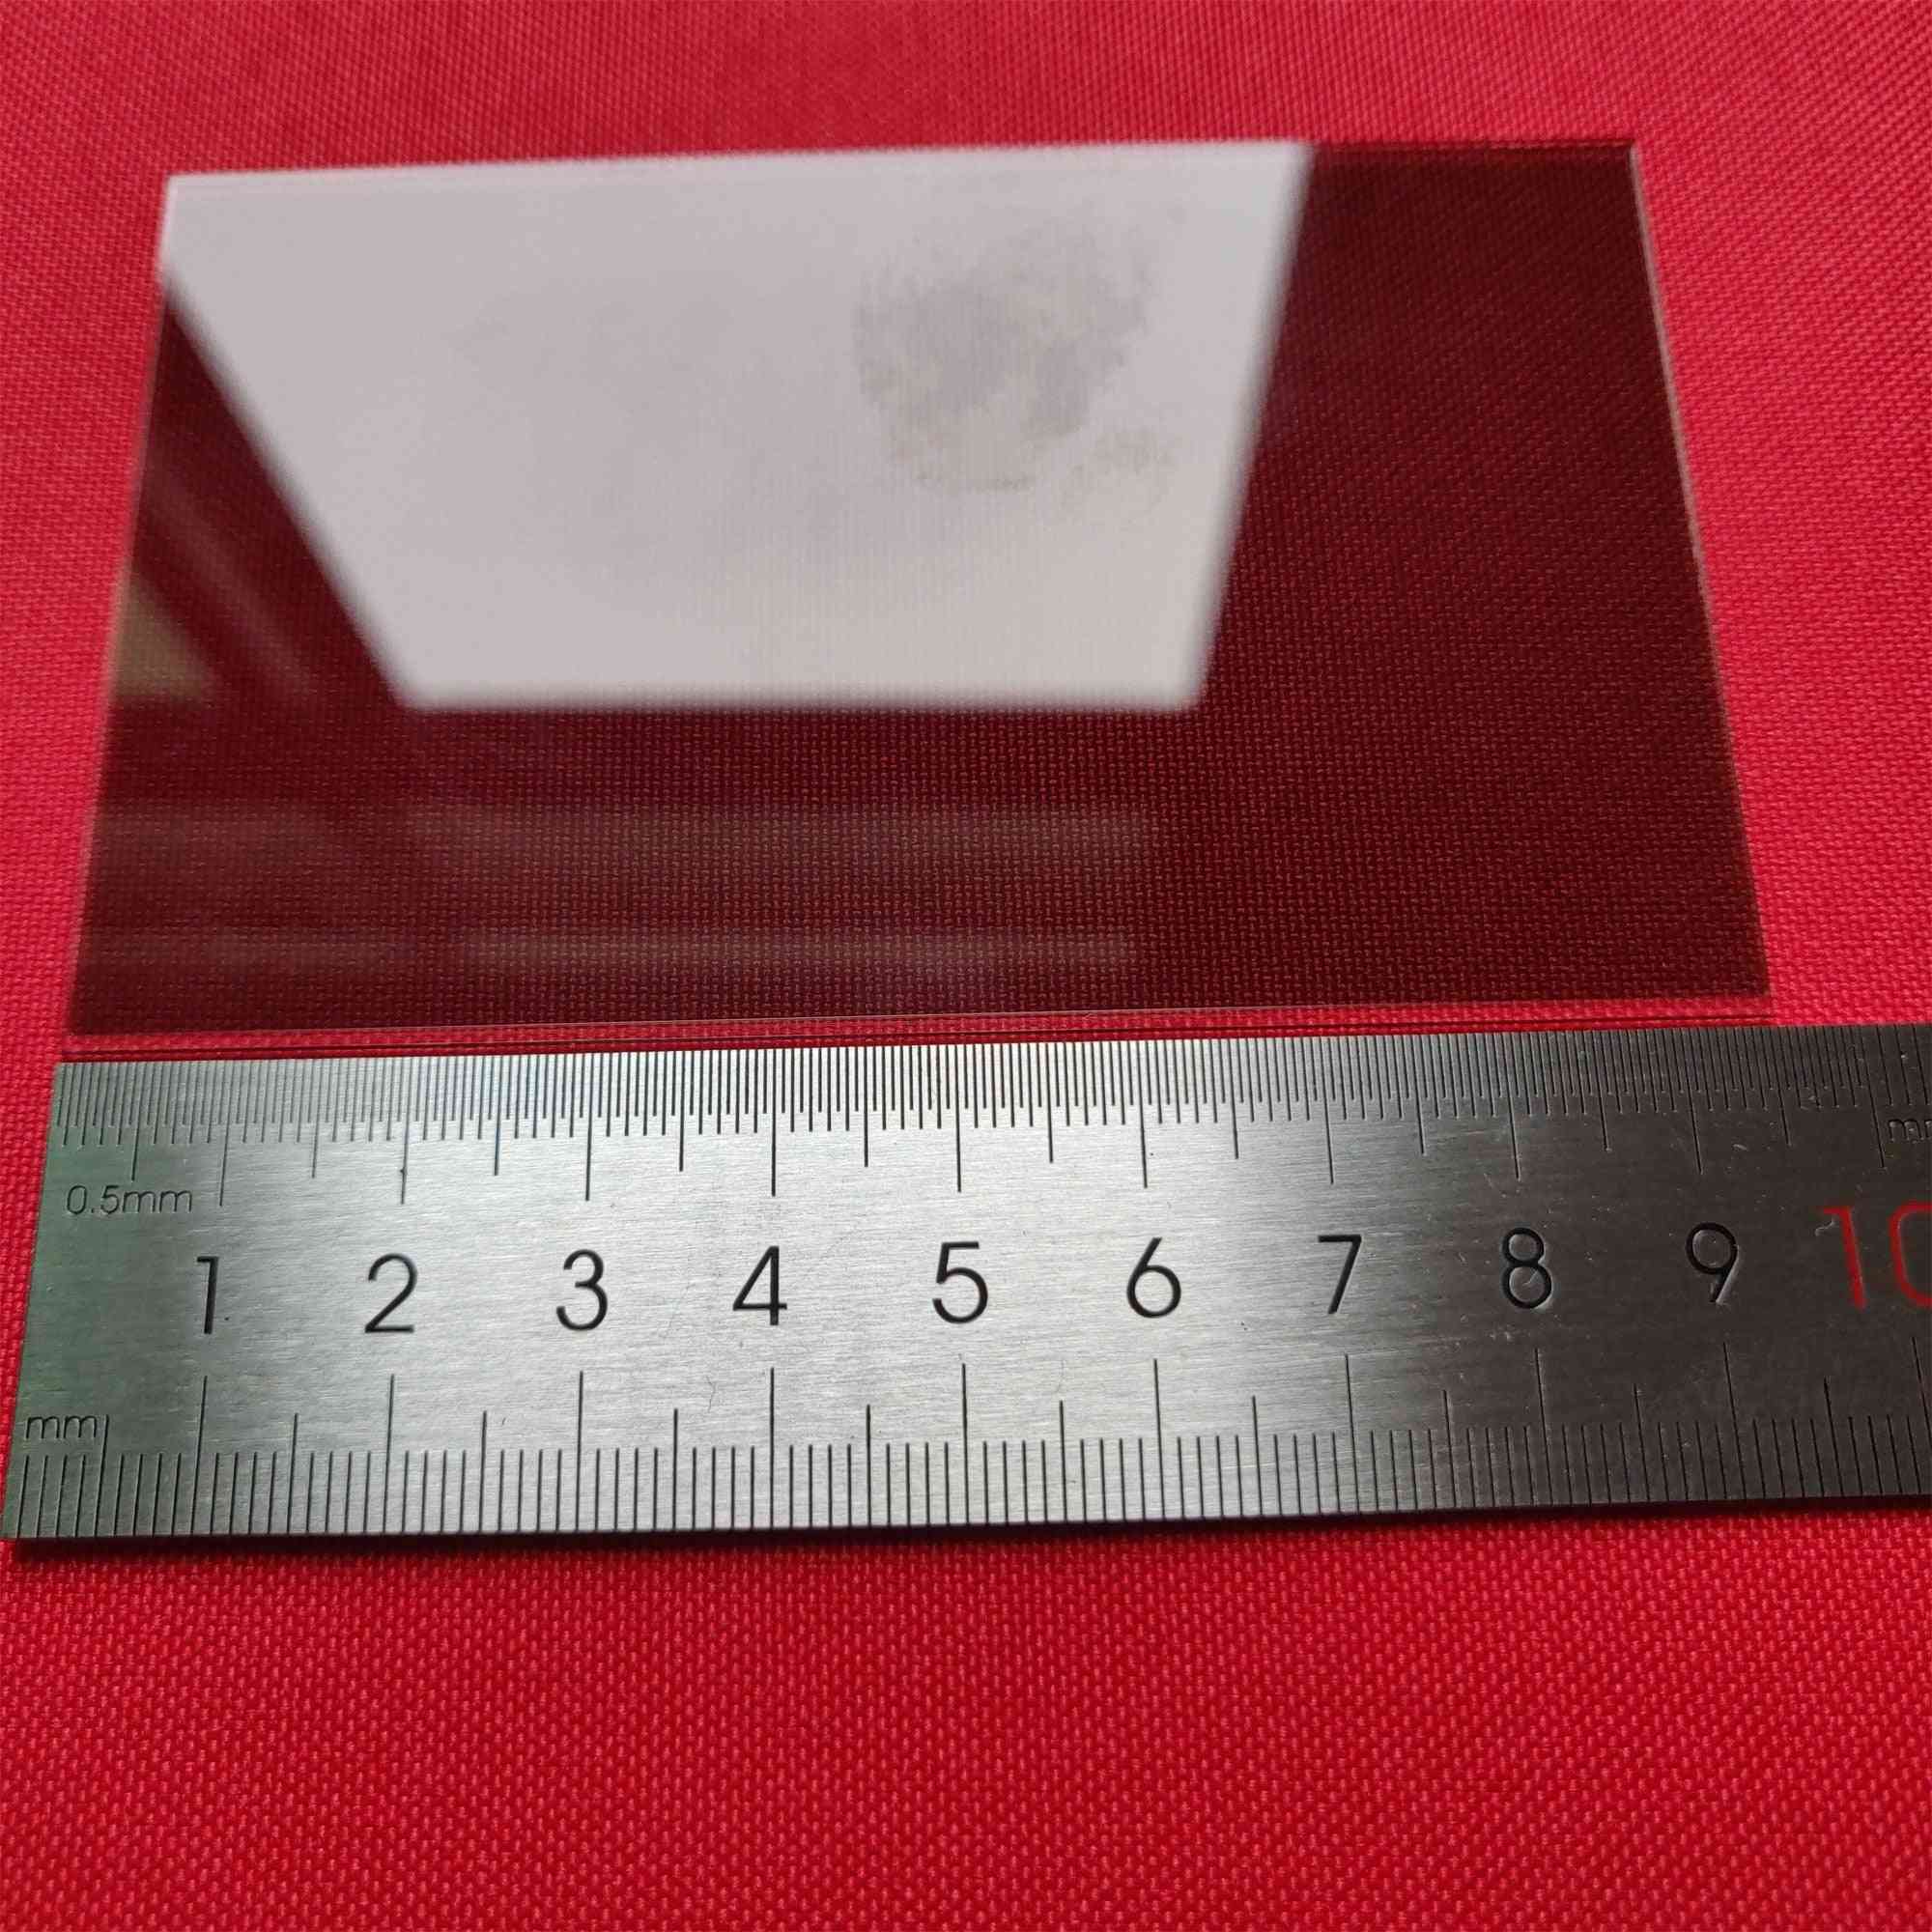 Sticlă polarizantă de izolare termică, 1,2 mm pentru proiector LCD cu 4 inci mini led, piesă de reparație pentru unic uc40 / uc46 rigal